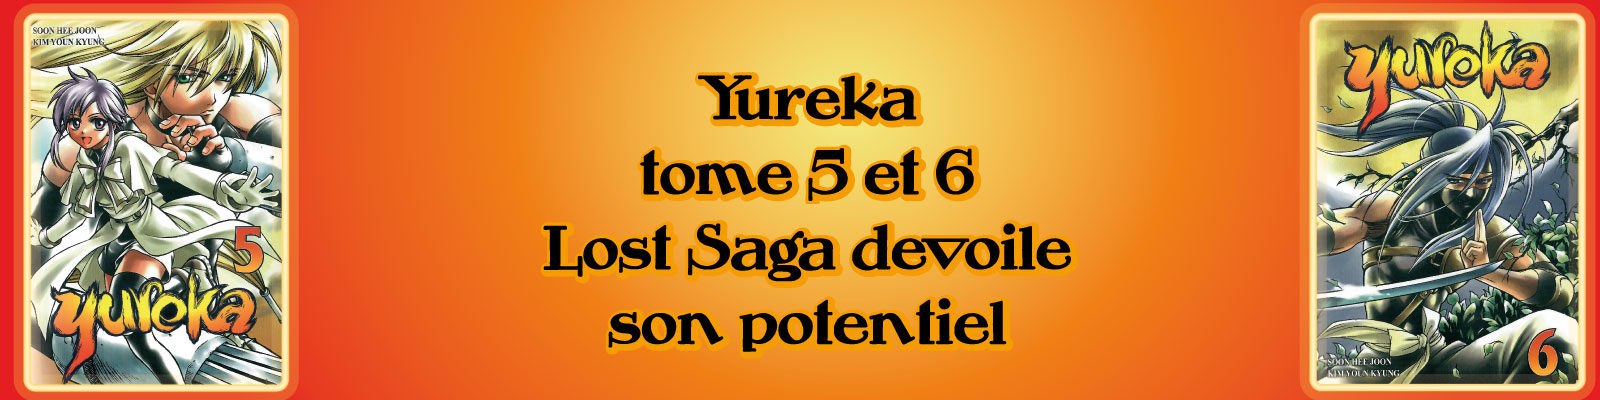 yureka (2)